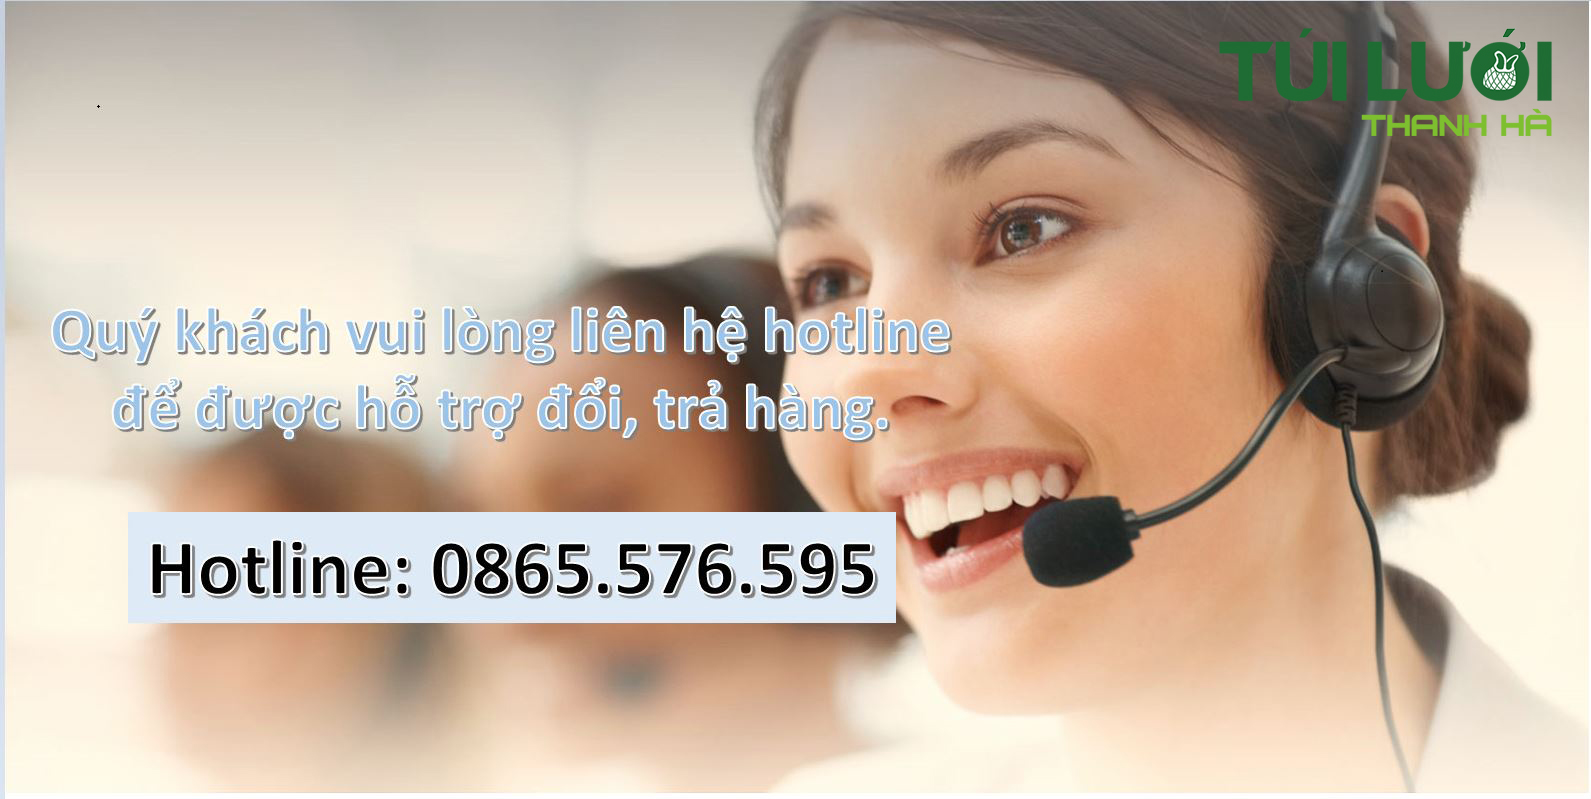 Hotline hỗ trợ khách hàng đổi trả